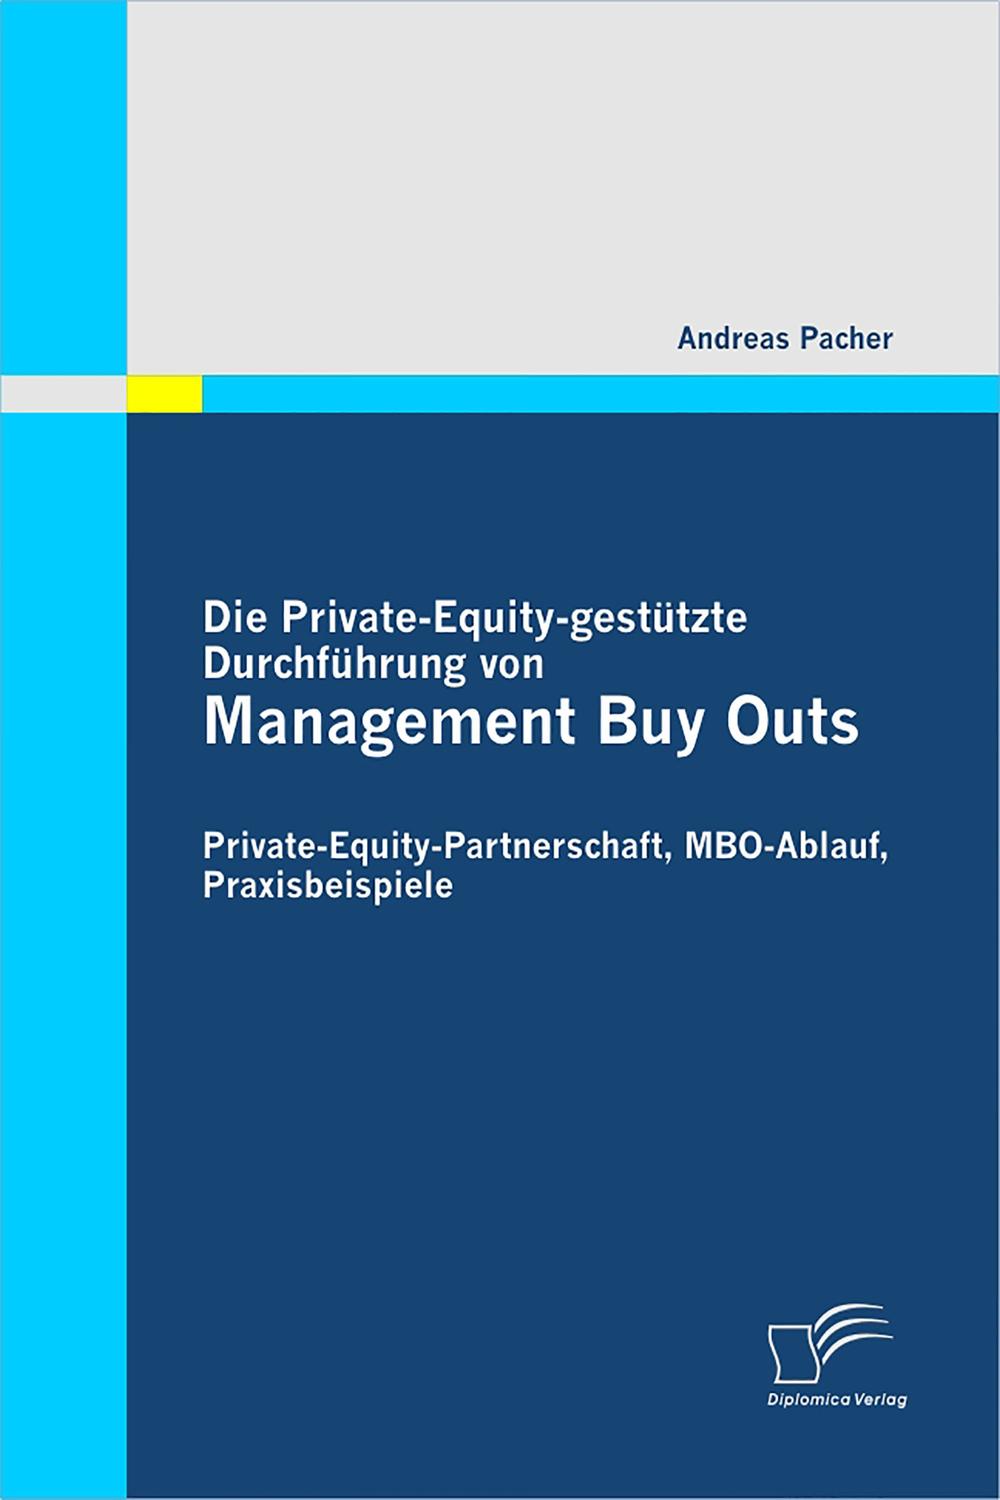 Die Private-Equity-gestützte Durchführung von Management Buy Outs: Private-Equity-Partnerschaft, MBO-Ablauf, Praxisbeispiele - Andreas Pacher